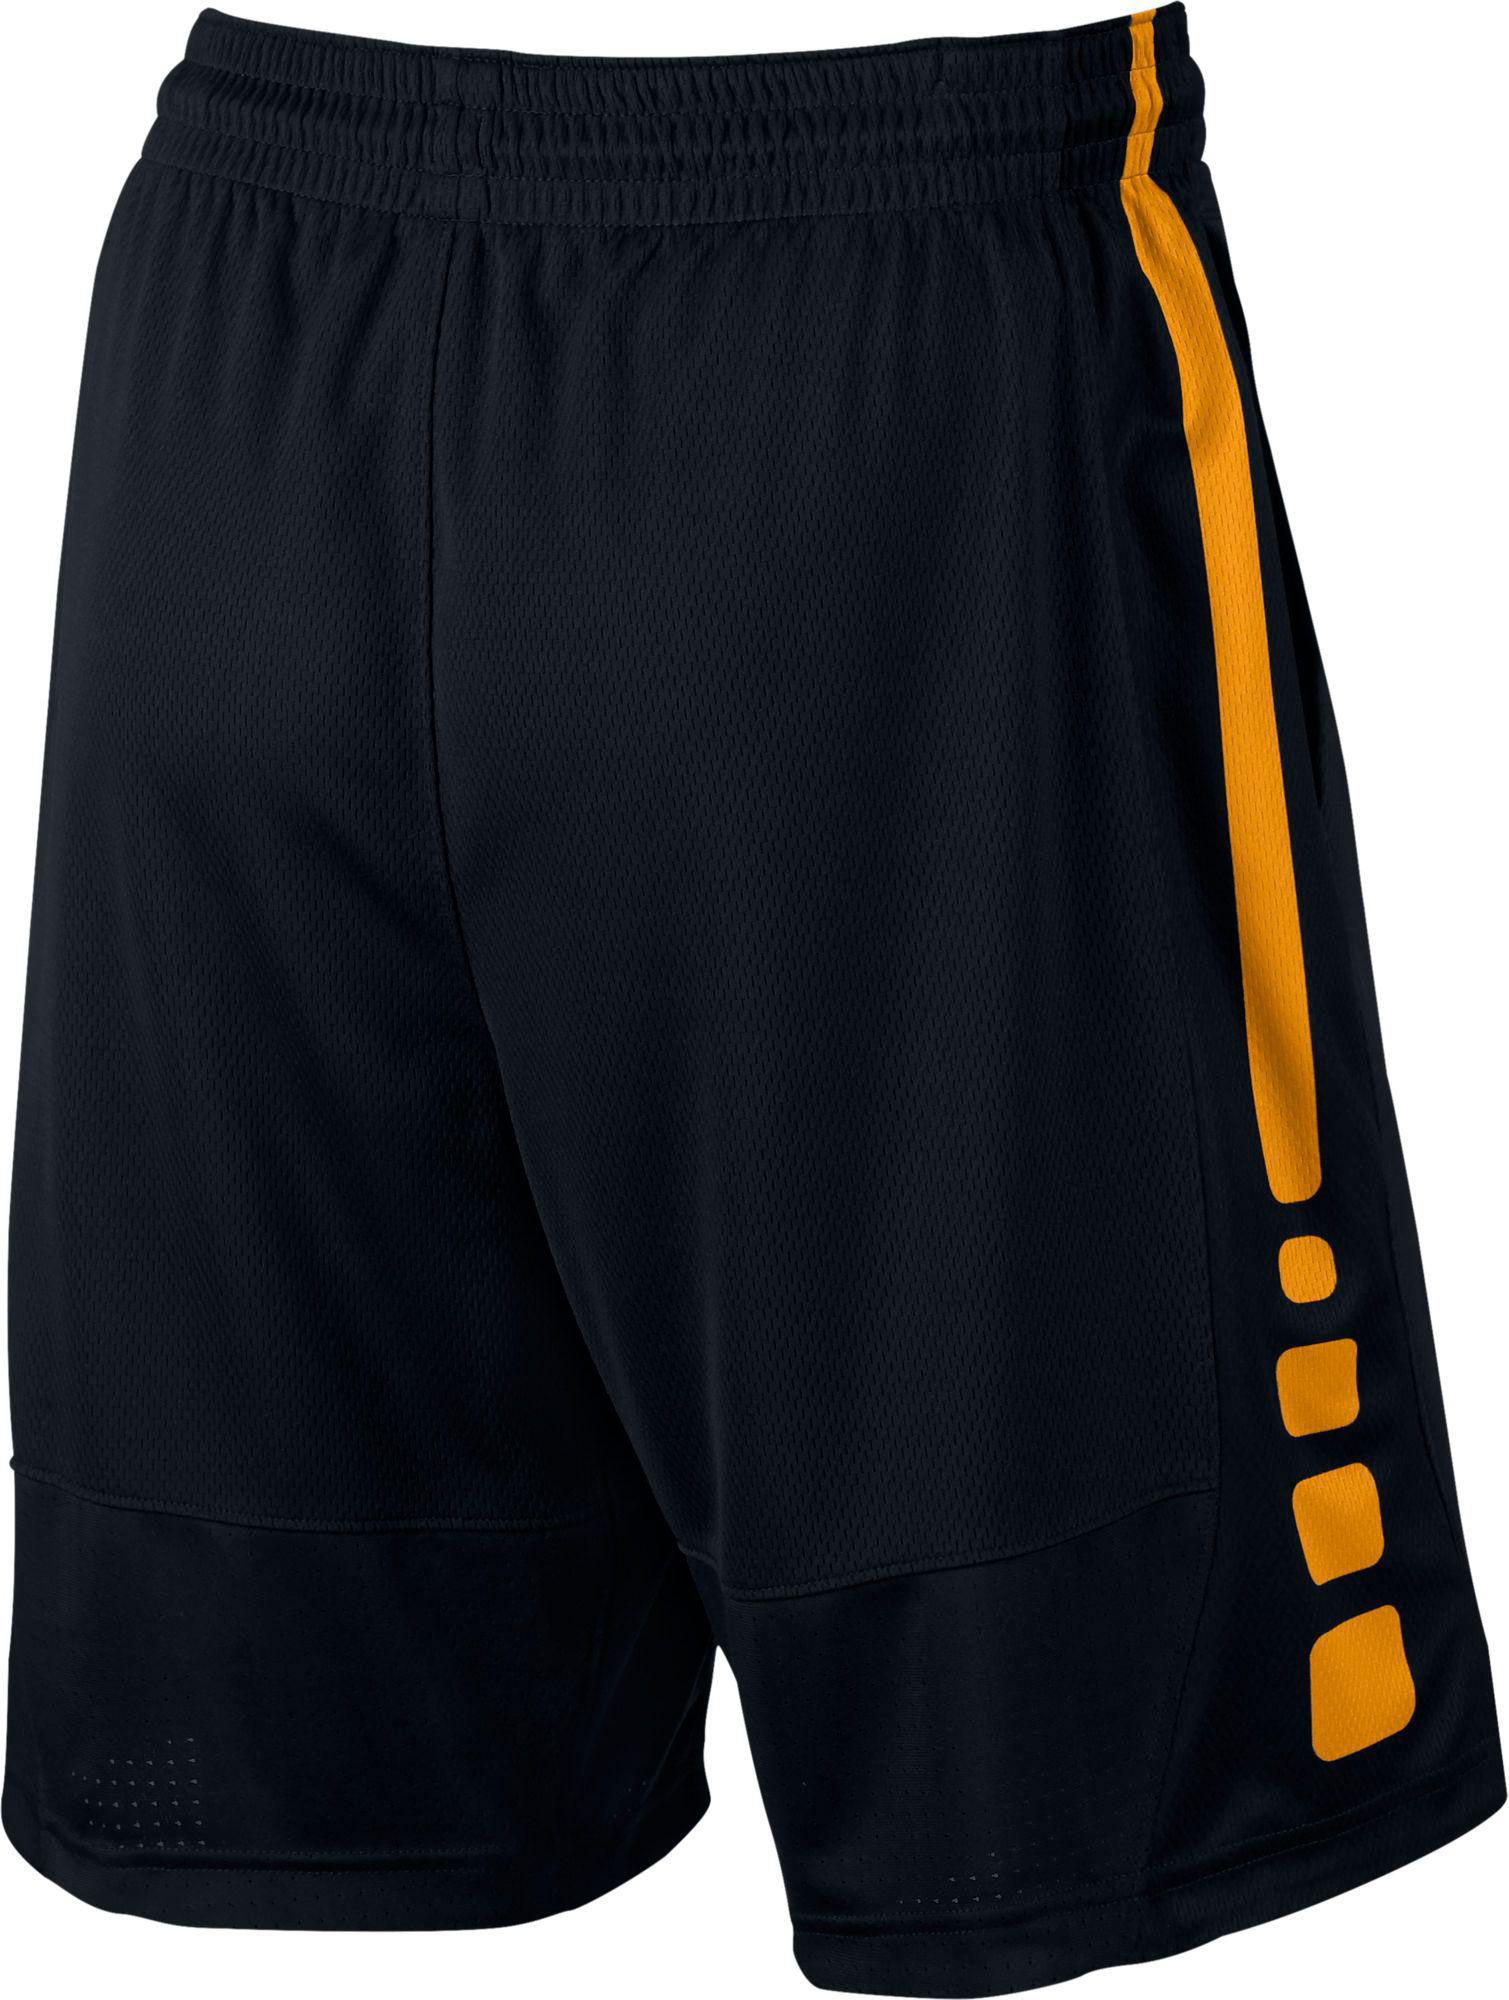 Nike Elite Stripe Basketball Shorts in Black for Men - Lyst